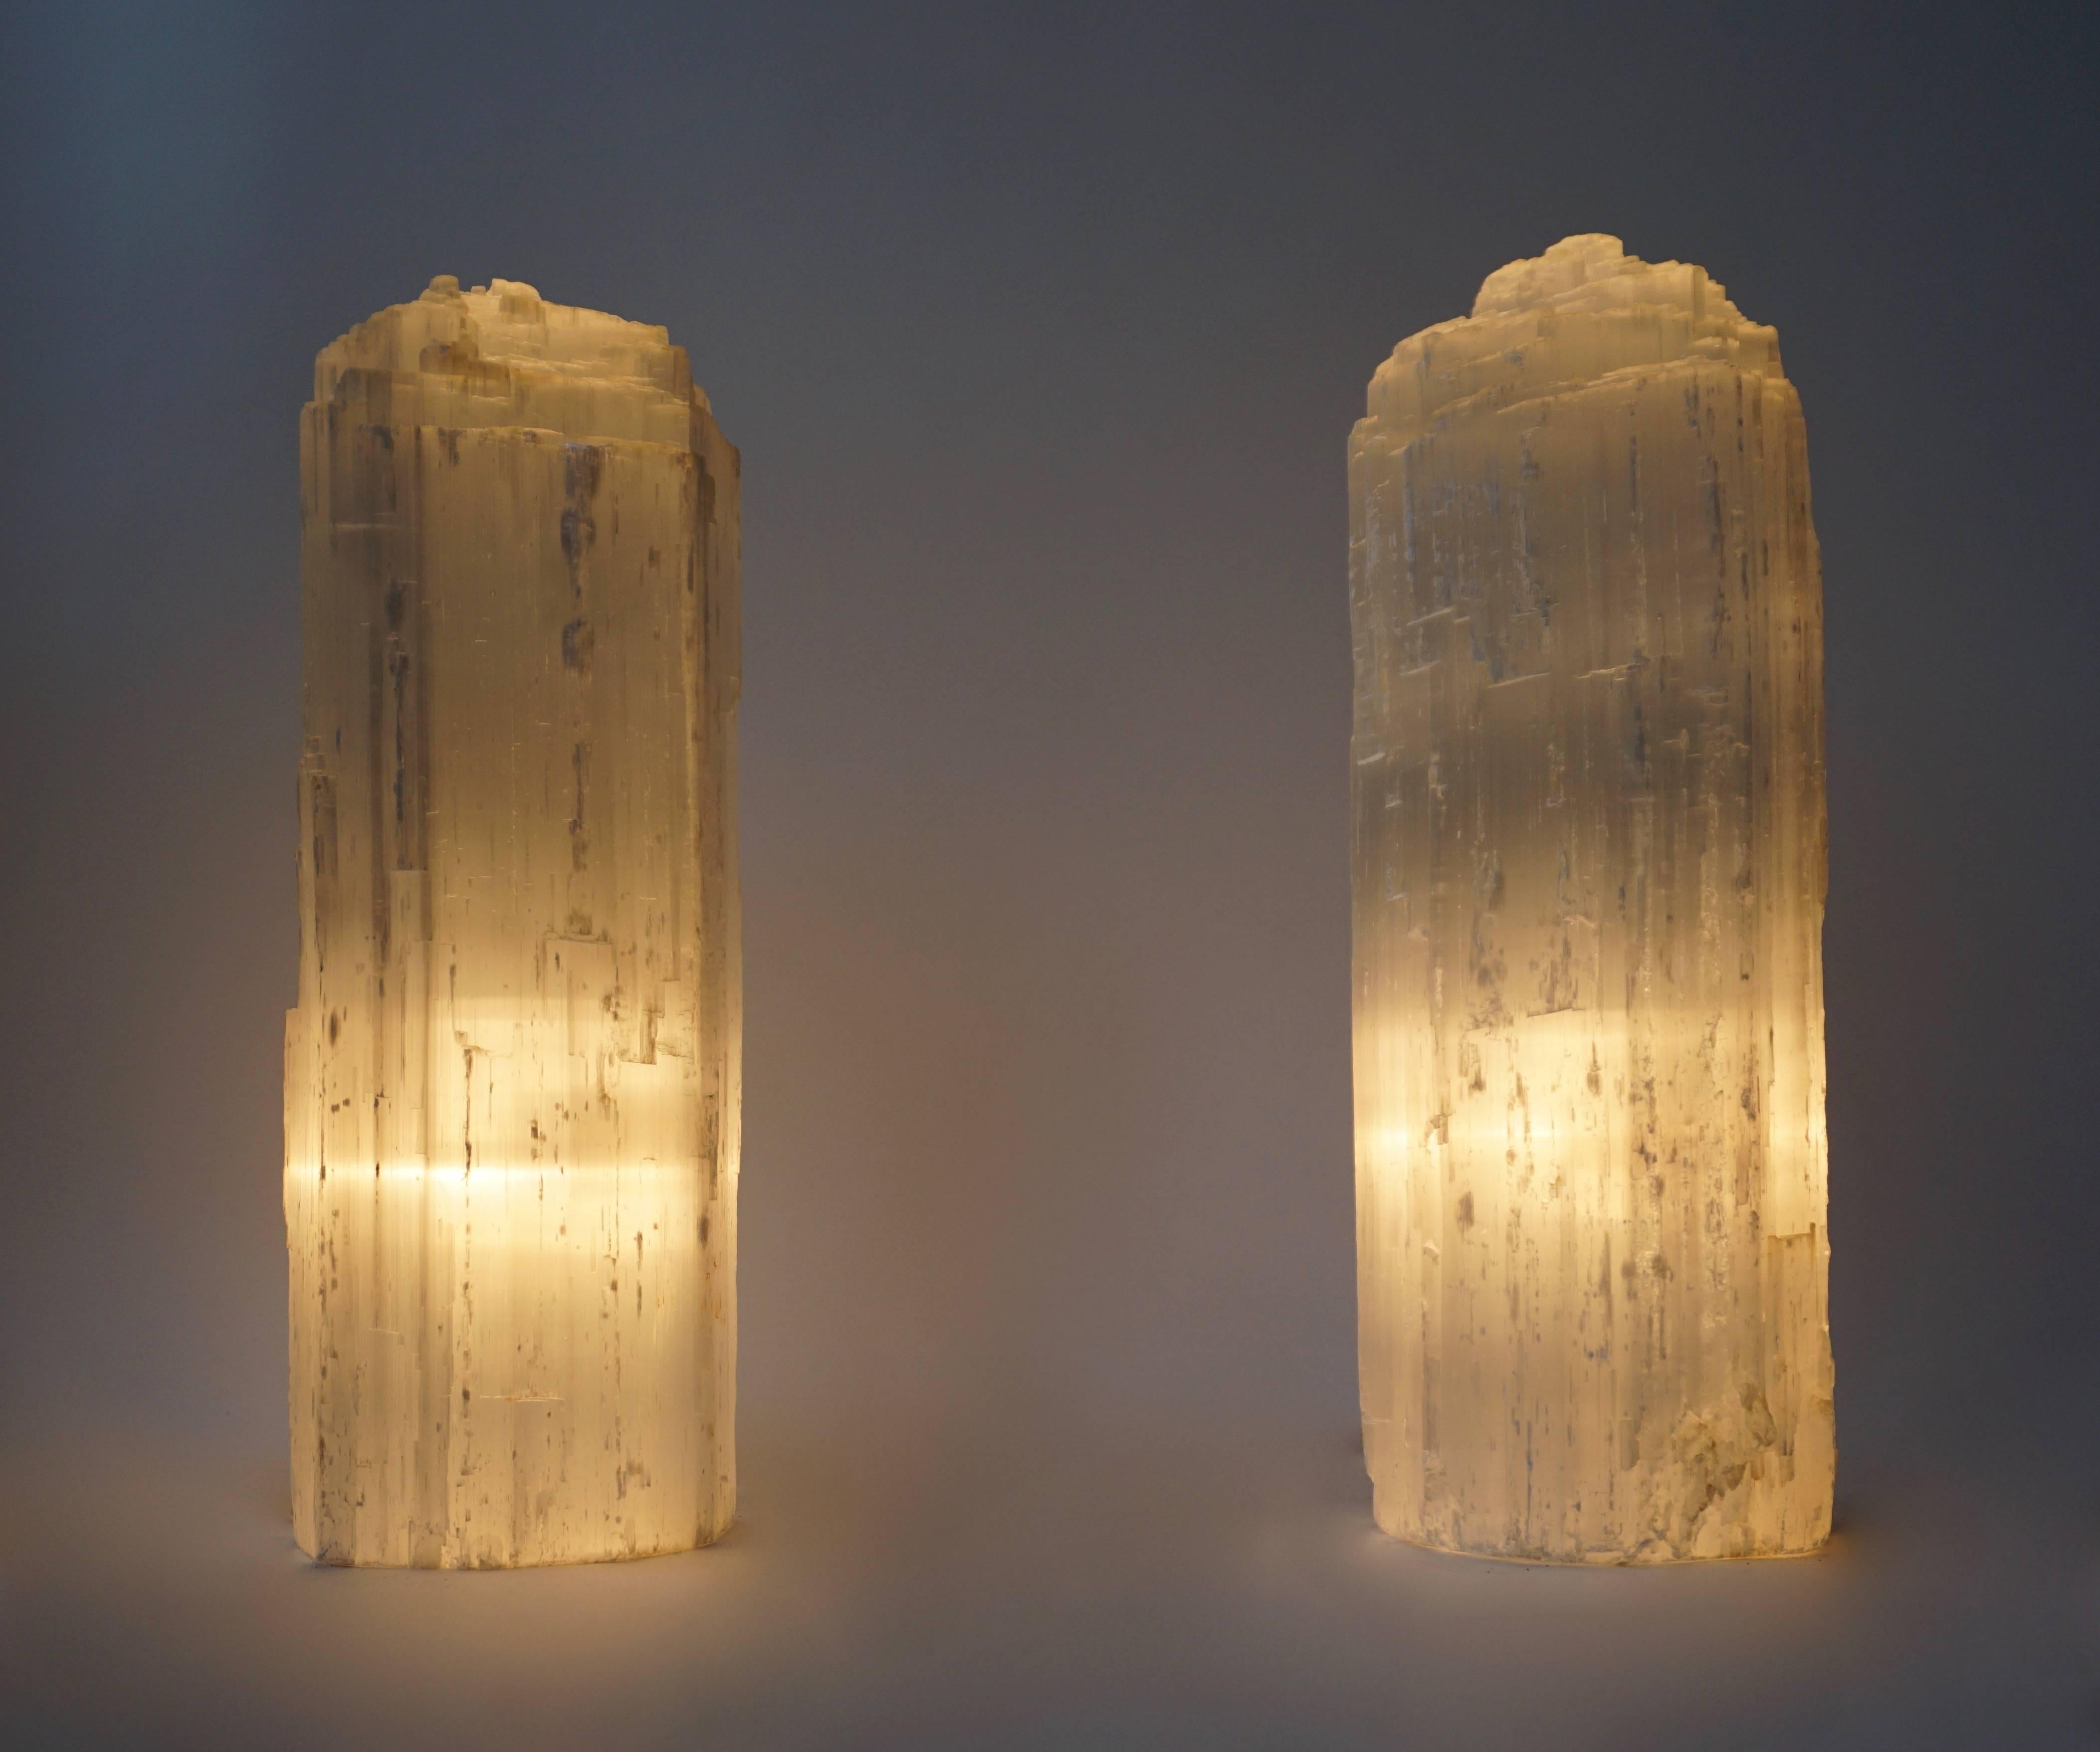 Eine Tisch- oder Stehlampe aus Selenit-Bergkristall.
Maße: Höhe 42 cm.
Durchmesser 14 cm.